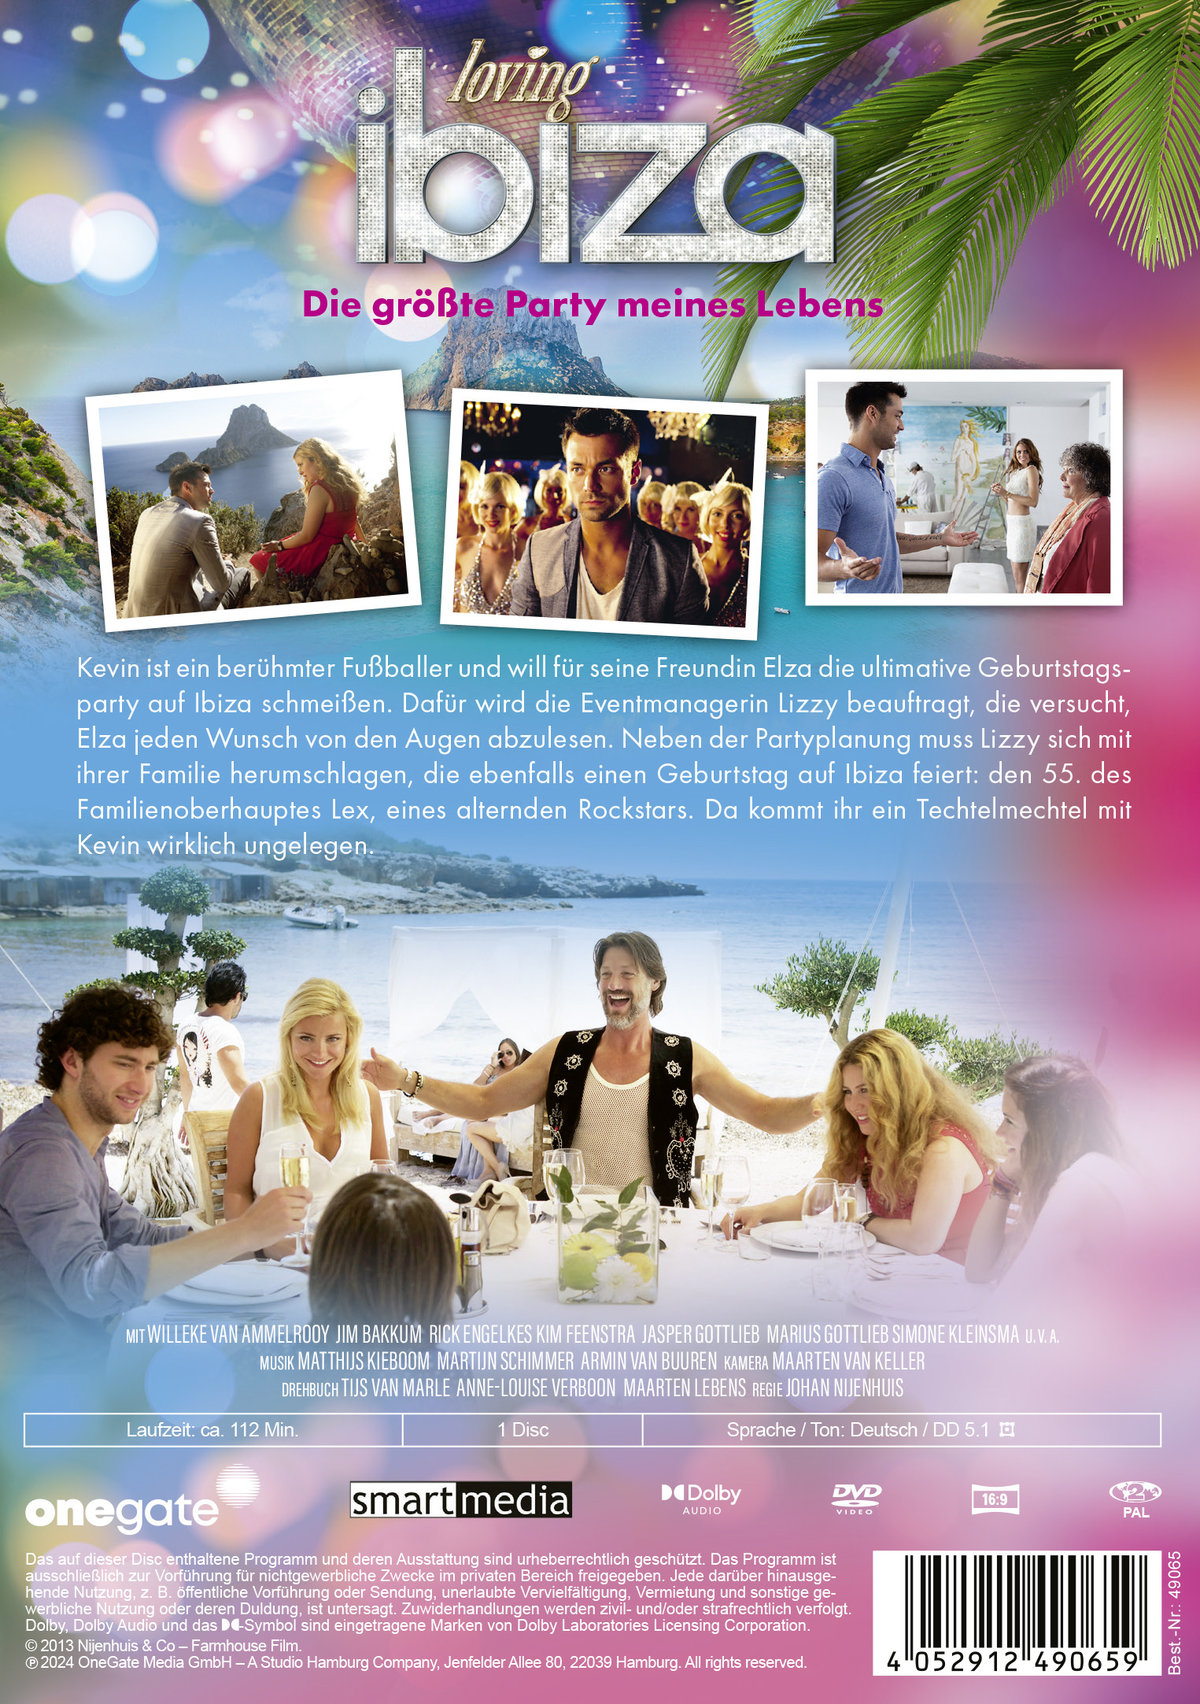 Loving Ibiza - Die größte Party meines Lebens  (DVD)